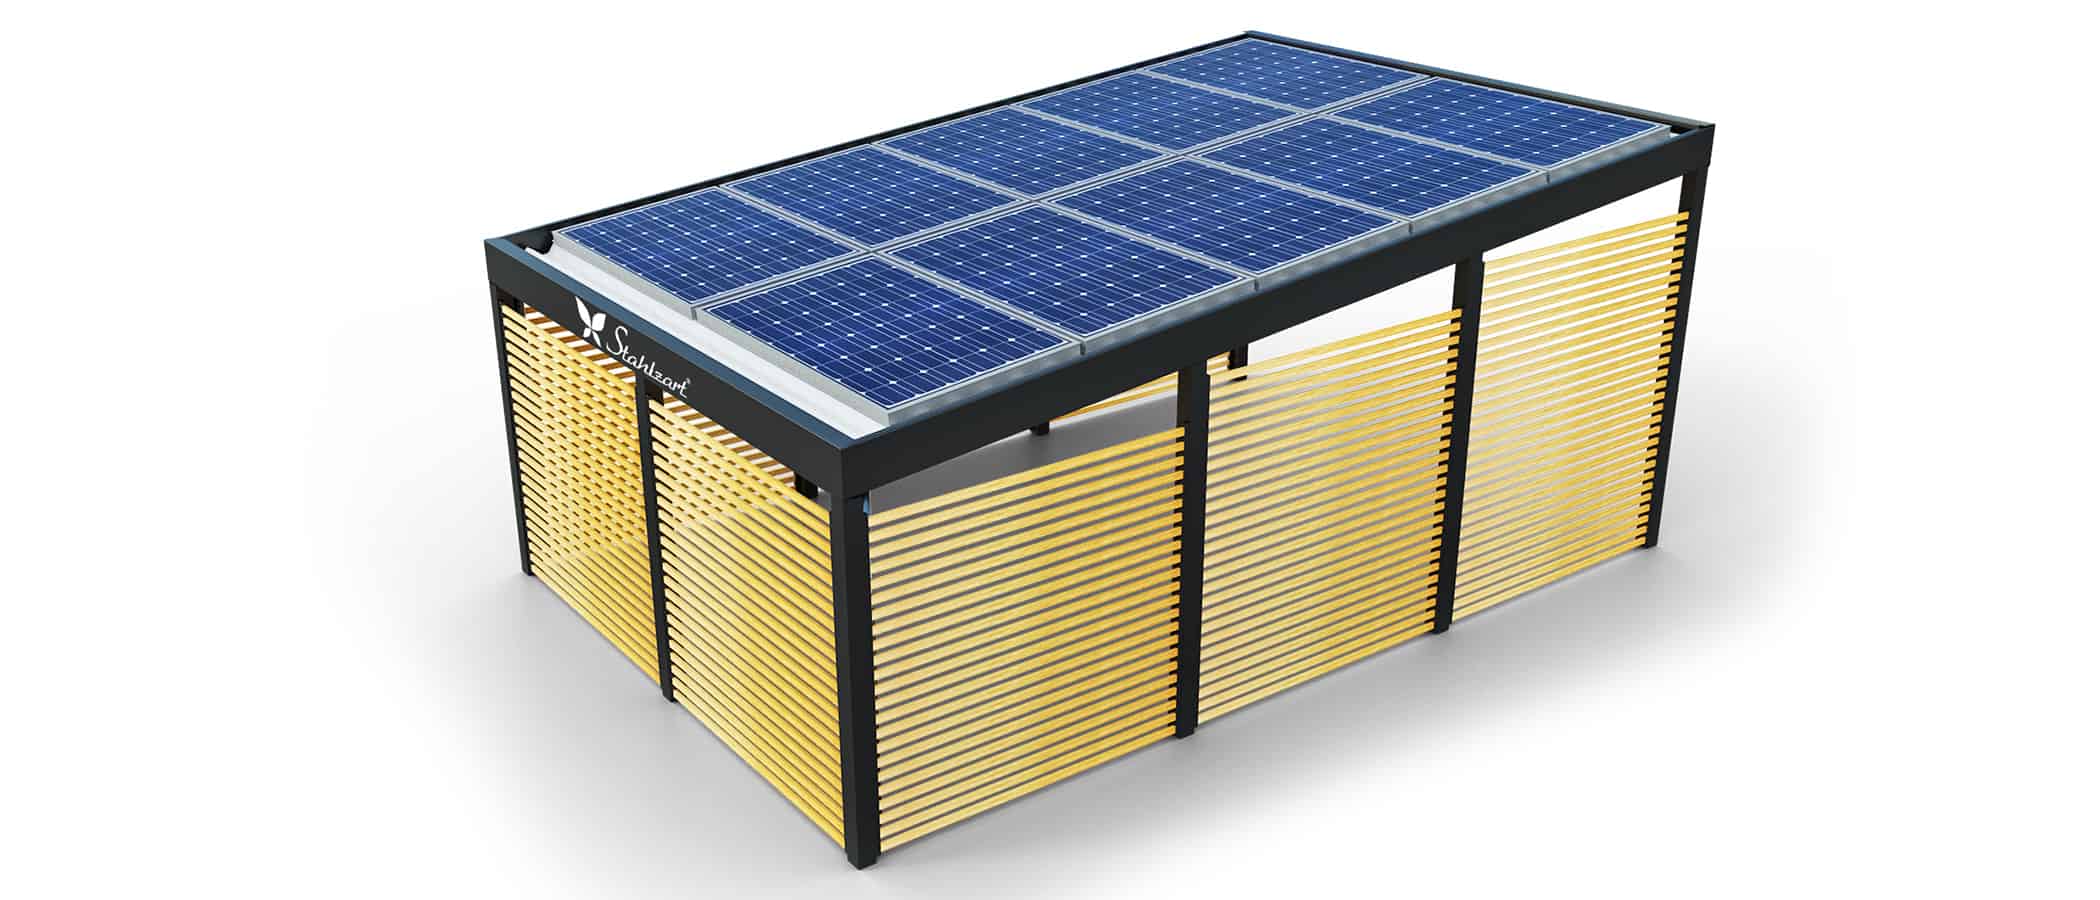 solar-carport-mit-pultdach-carports-solarcarport-pultdach-carportdach-design-strom-angebot-photovoltaikanlage-module-solardach-dachflaeche-metall-stahl-holz-seitenwand-blickdurchlaessig-stahlzart